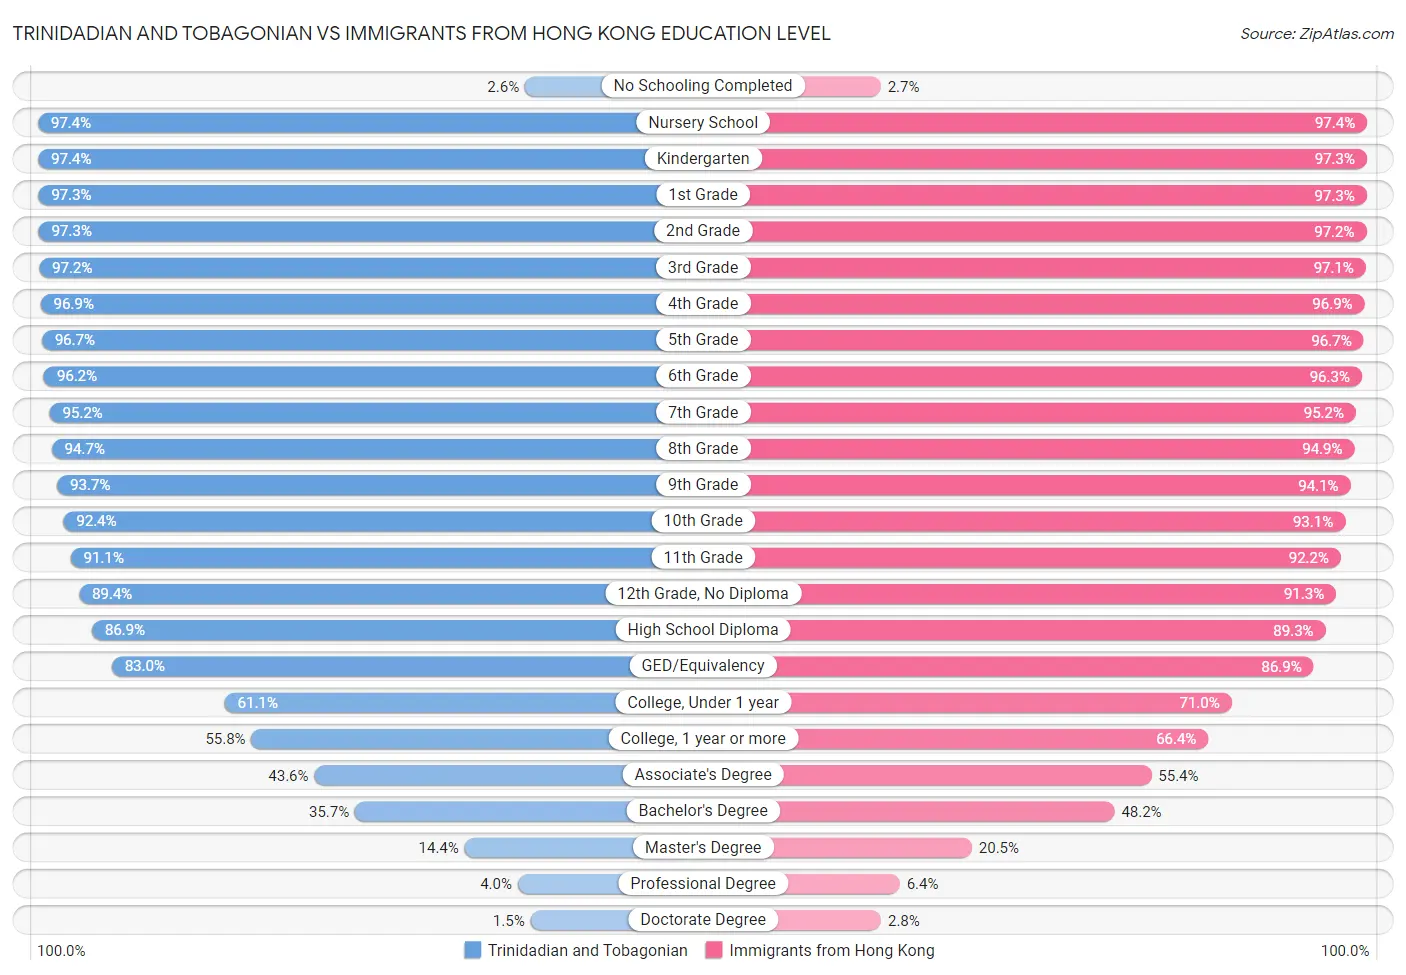 Trinidadian and Tobagonian vs Immigrants from Hong Kong Education Level